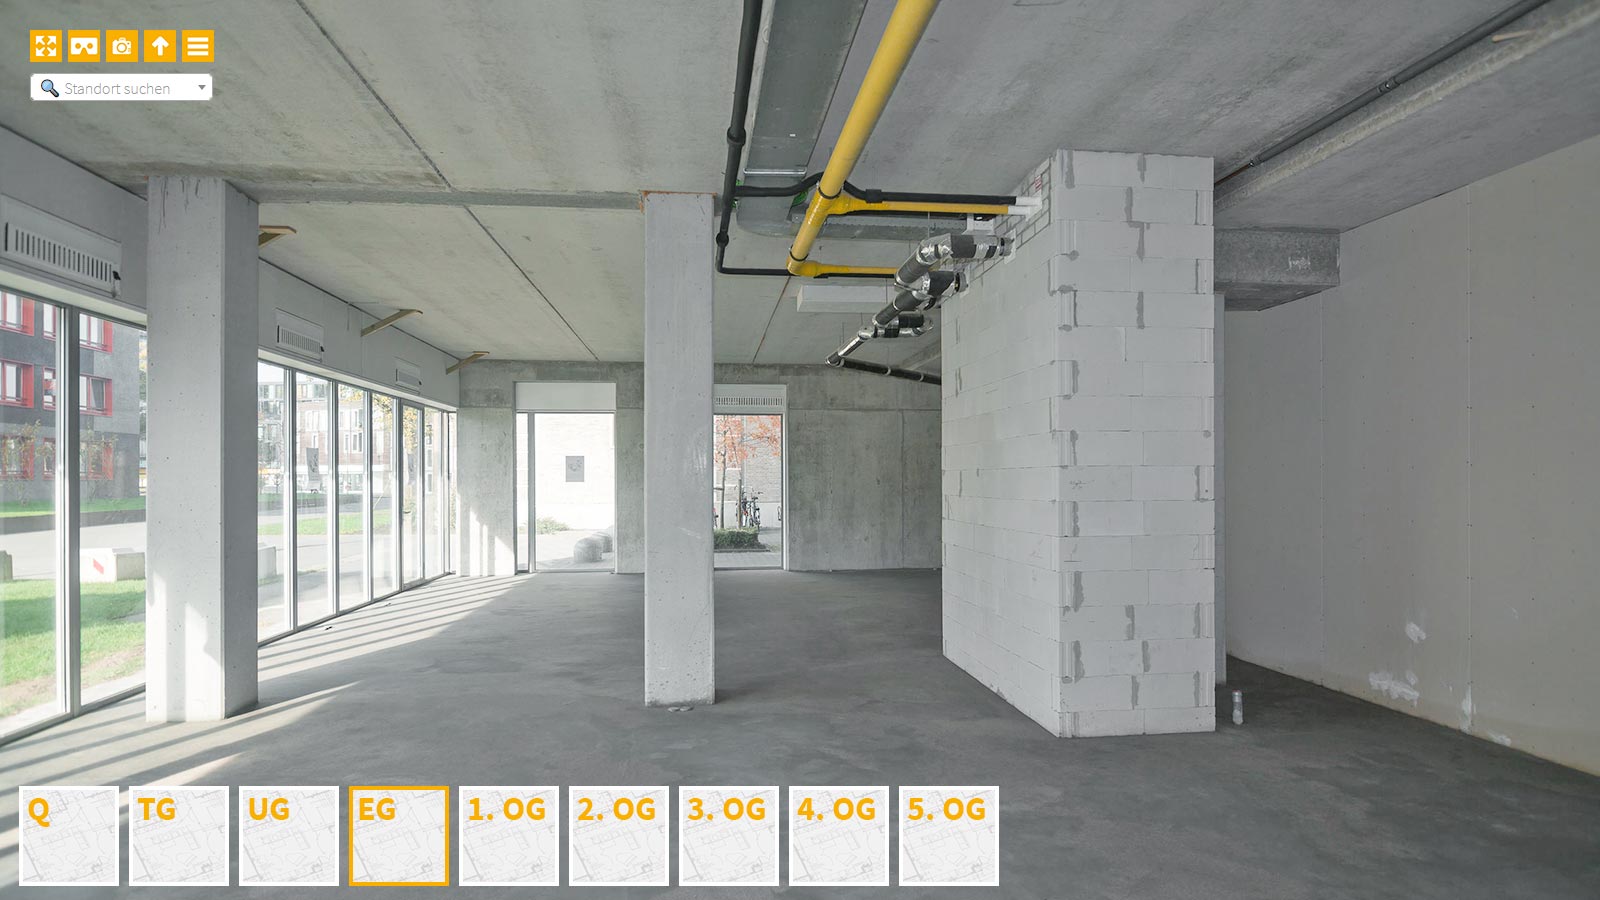 Baudokumentation 360 Grad bei gestörten Projekten in 


	


	


	


	


	


	


	


	


	


	Frankfurt am Main









, Bilddokumentation als virtueller Rundgang